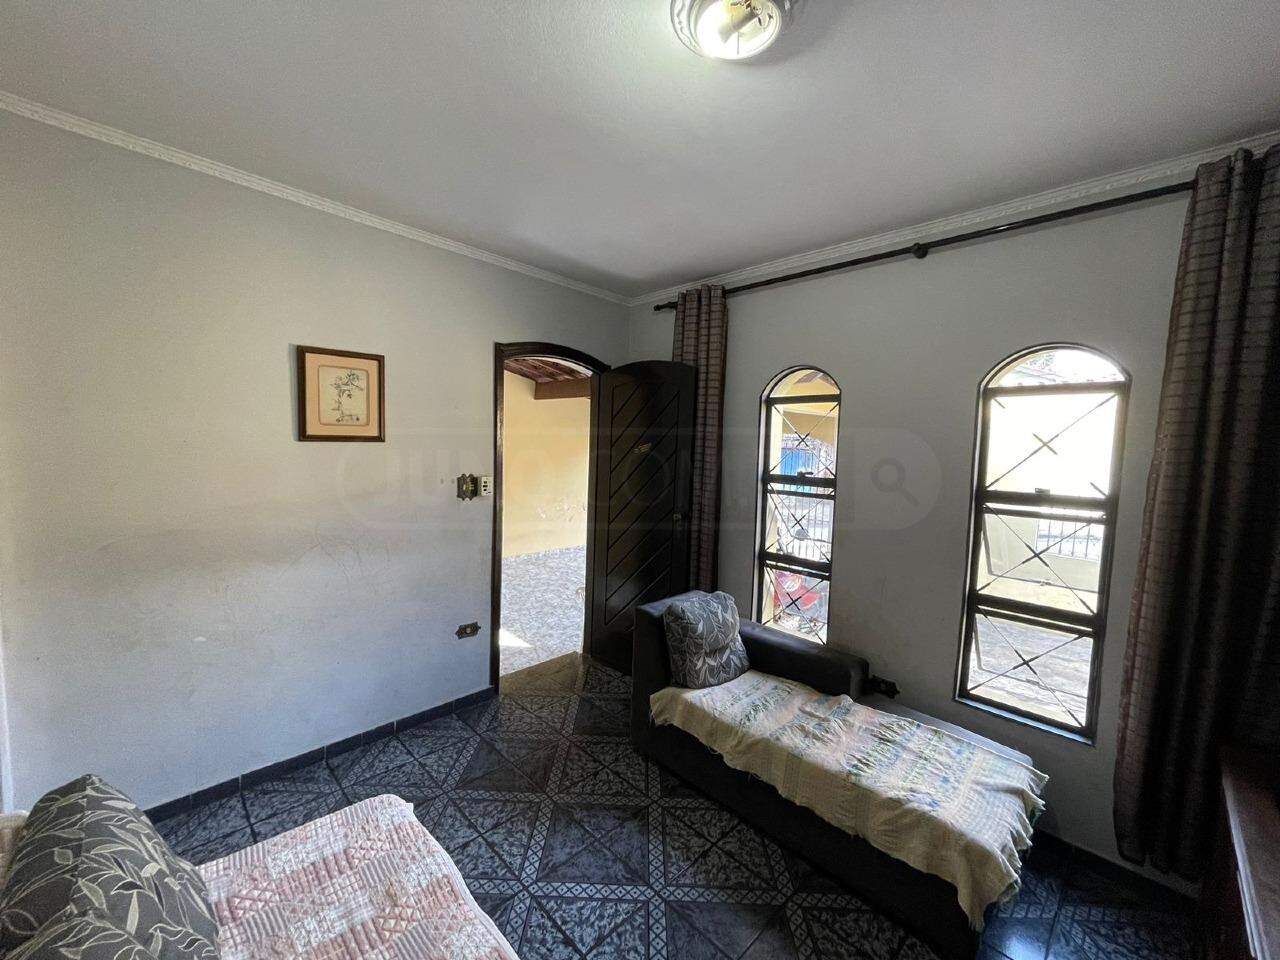 Casa à venda, 3 quartos, sendo 1 suíte, 2 vagas, no bairro Jaraguá em Piracicaba - SP